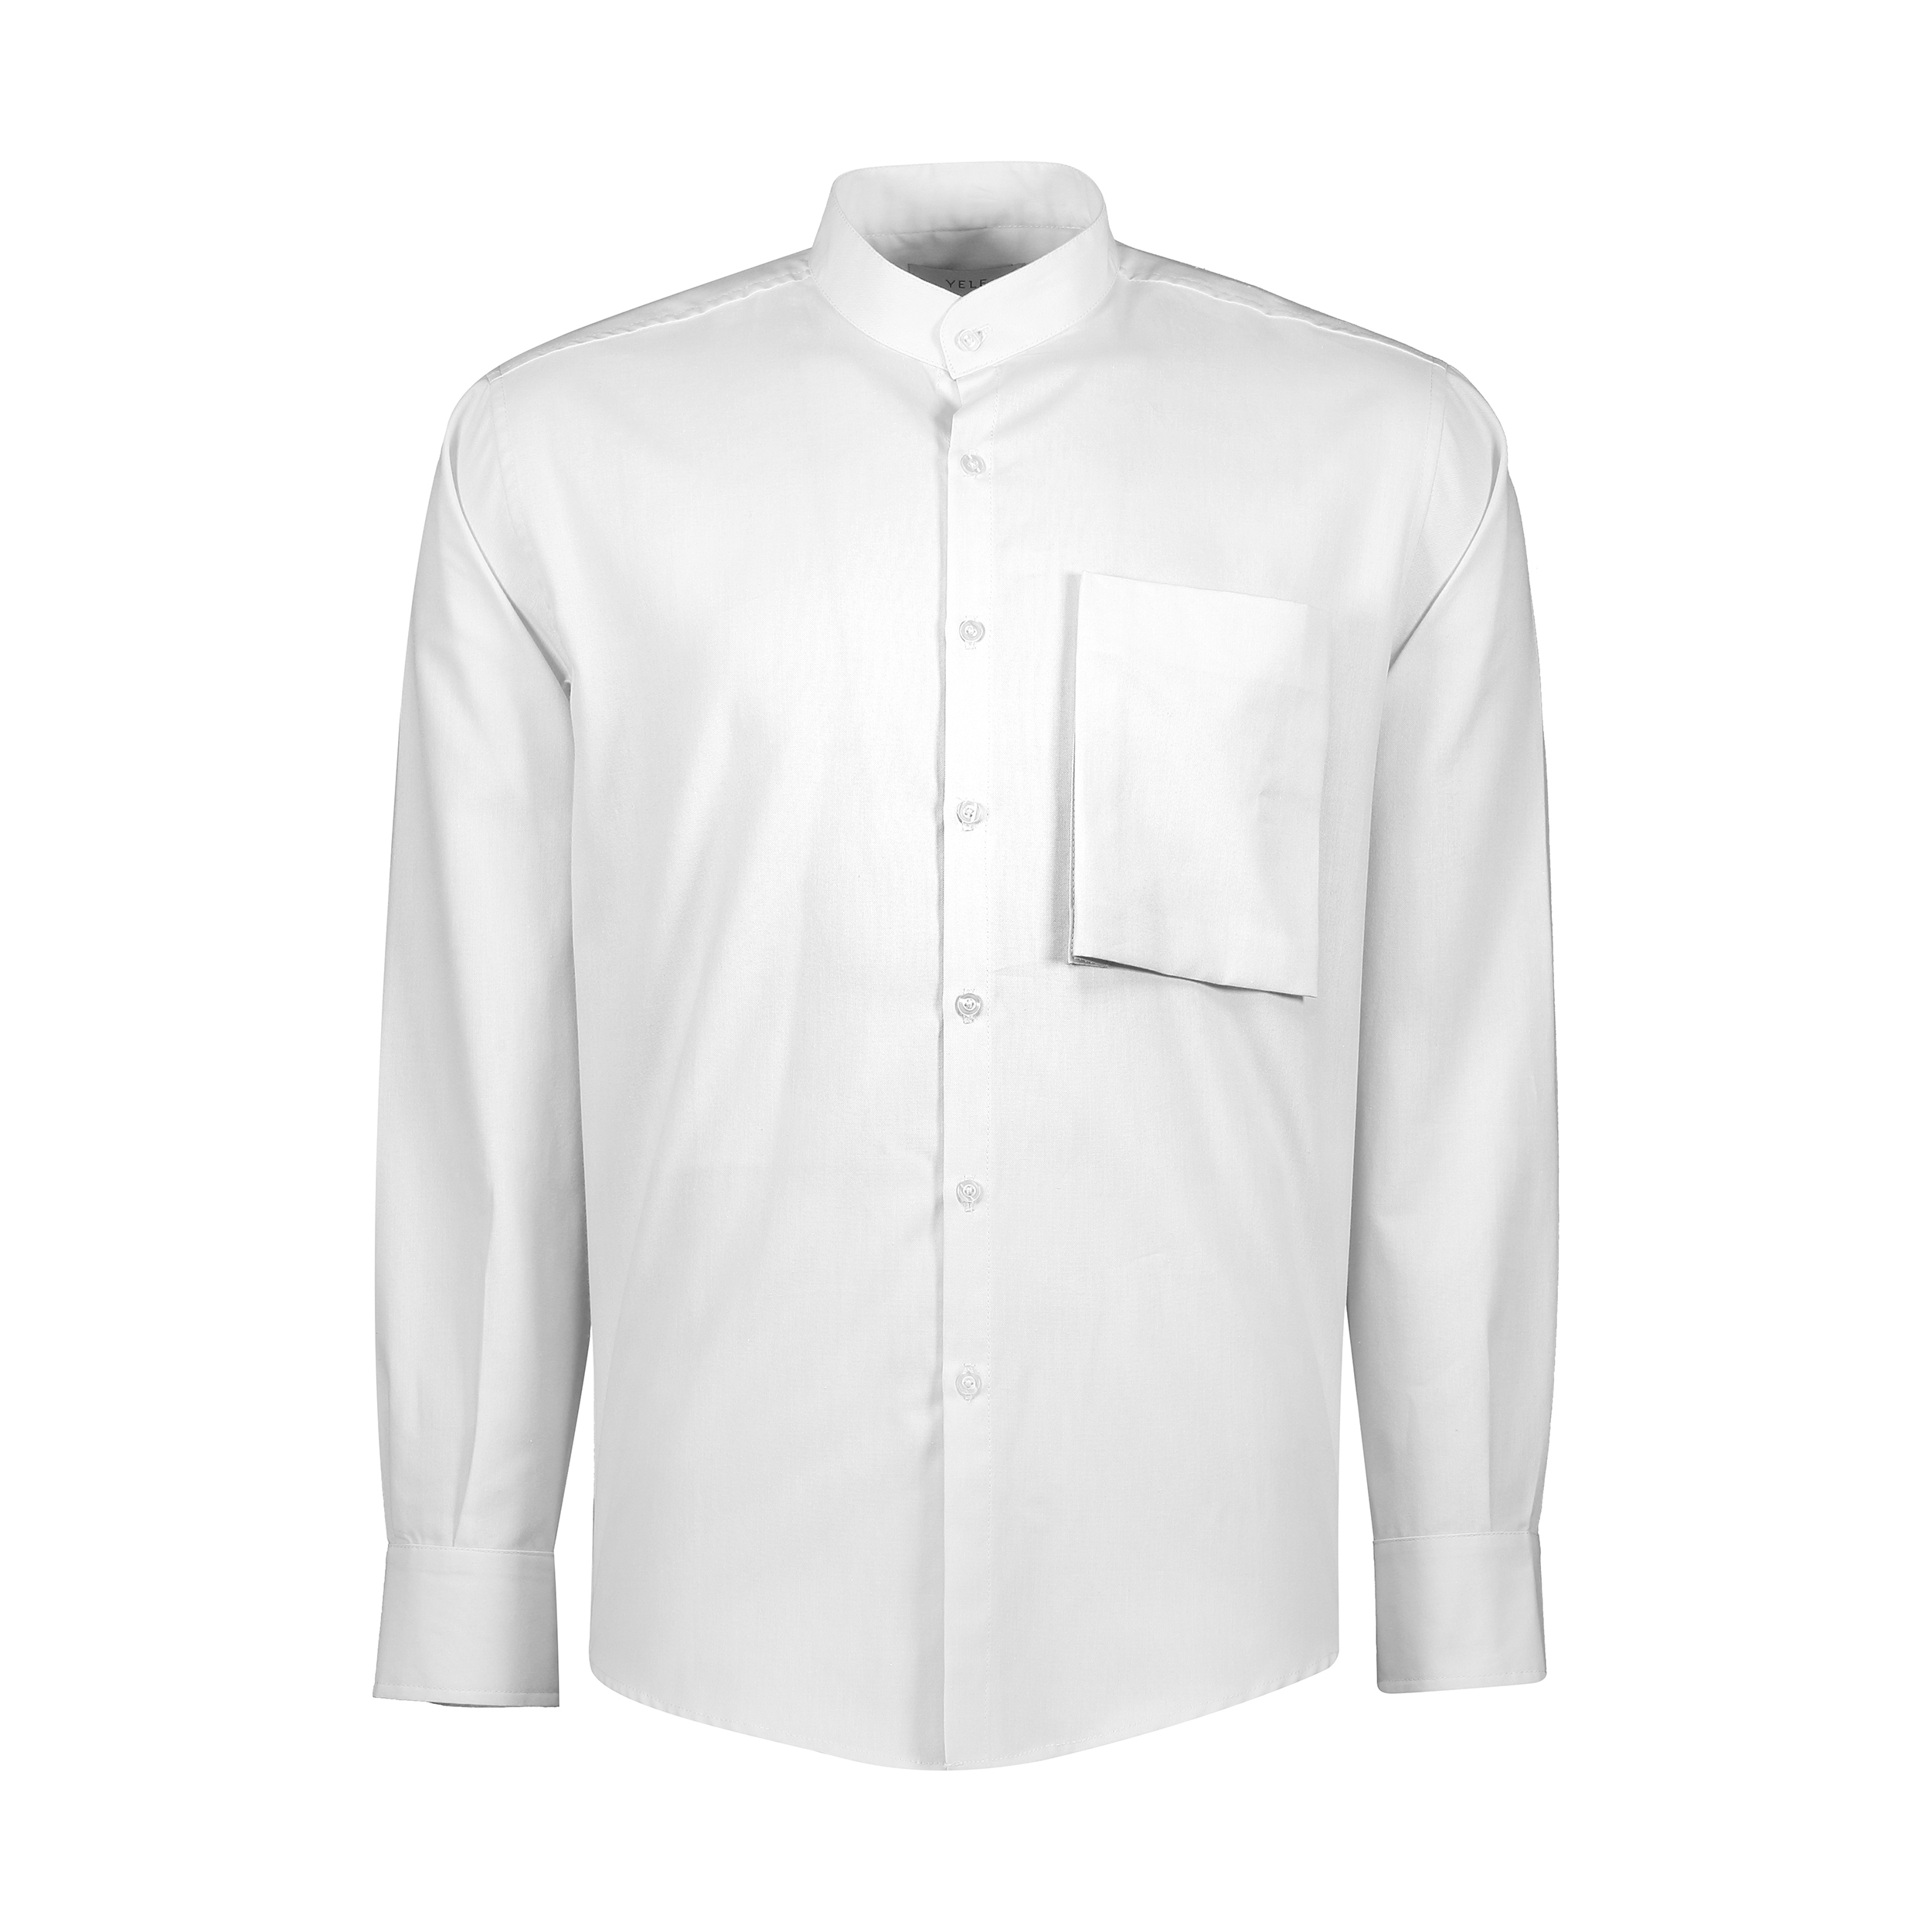 پیراهن آستین بلند مردانه یله مدل M4493000SH رنگ سفید